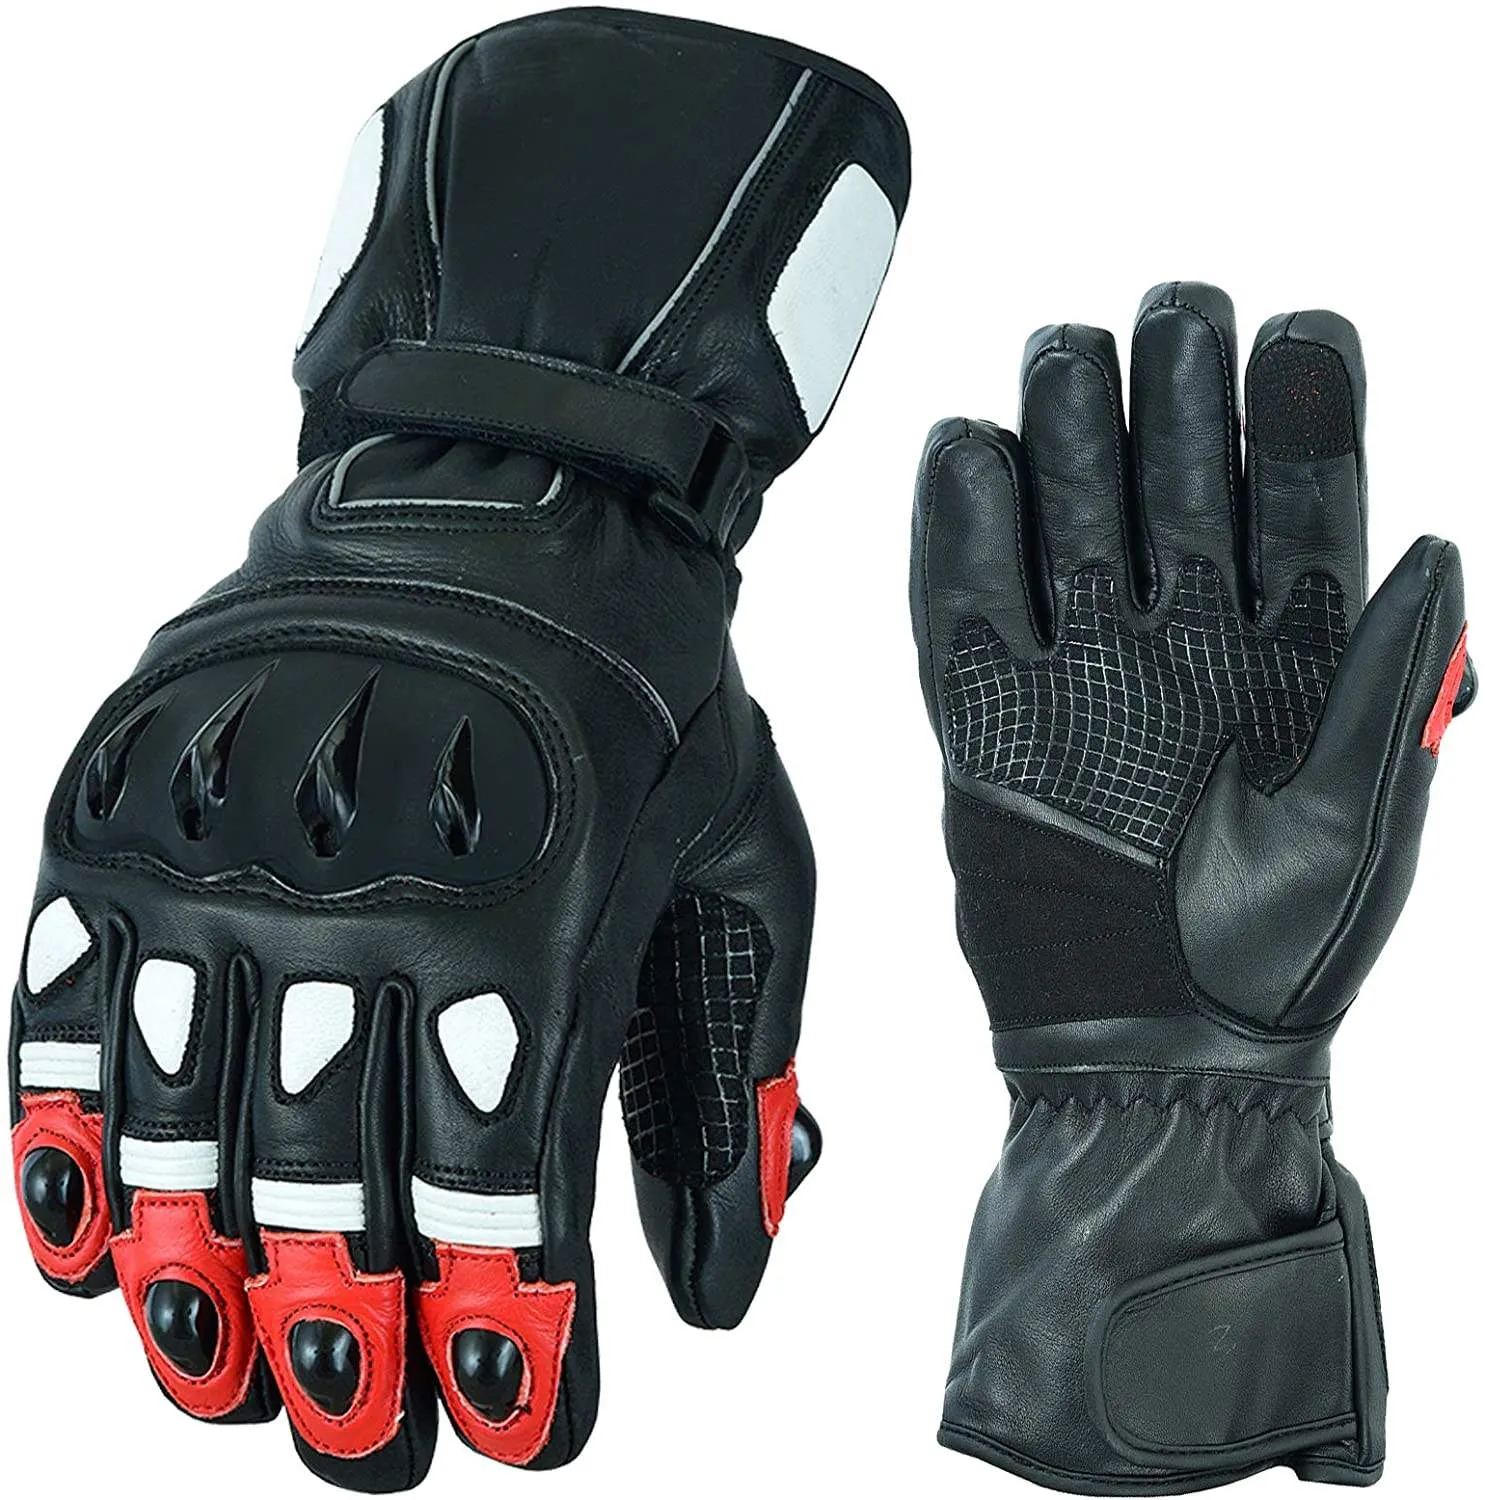 Özel Logo deri motorsiklet spor eldiven en iyi tasarım anti şok motosiklet motosiklet yarış eldivenleri toptan özelleştirilmiş